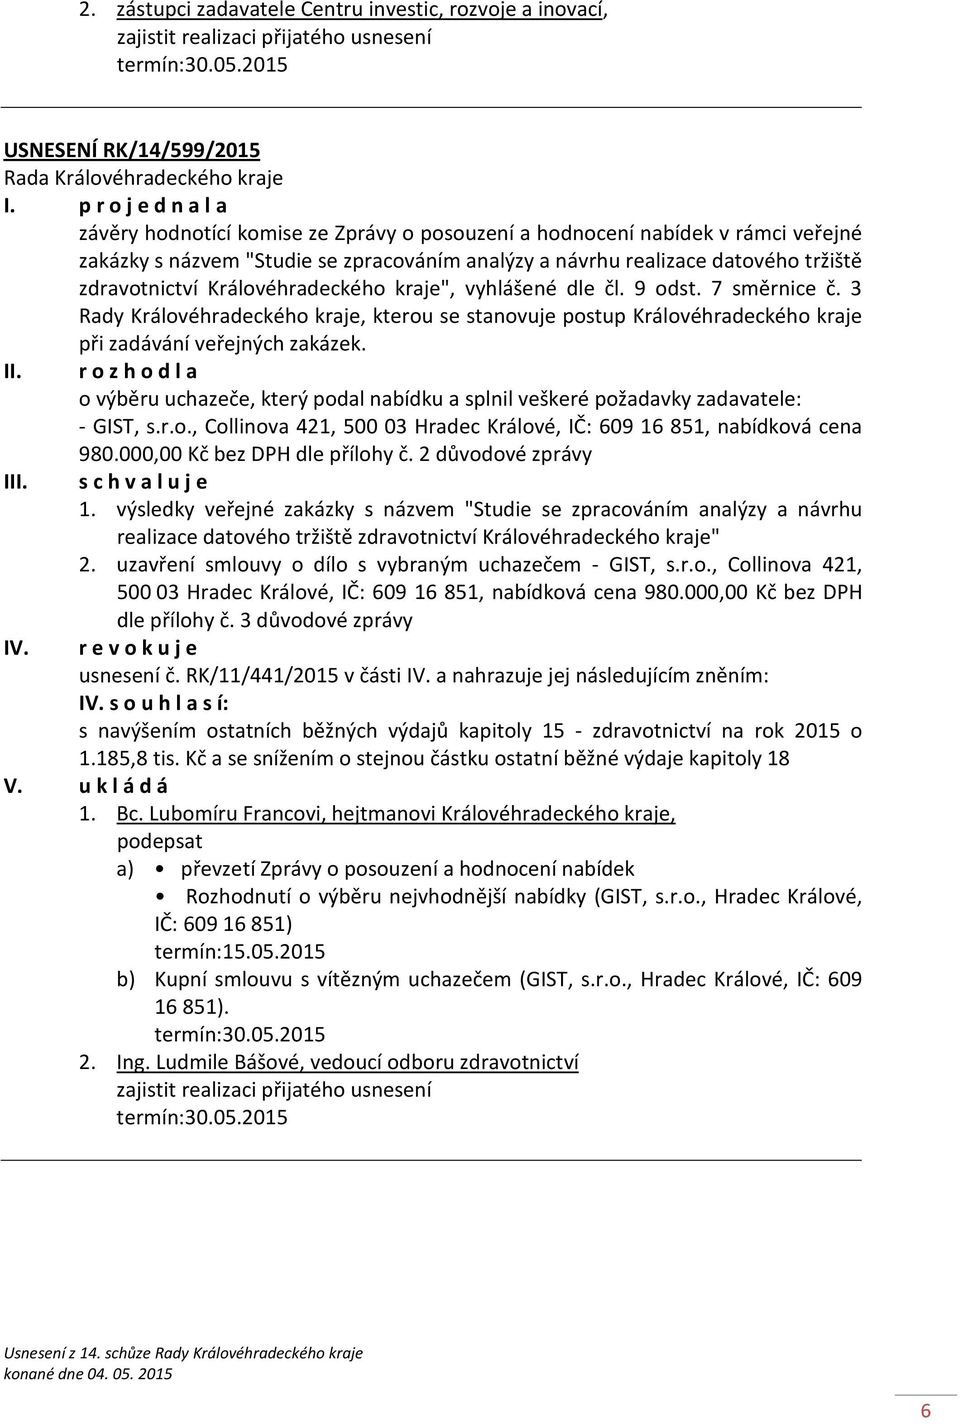 zdravotnictví Královéhradeckého kraje", vyhlášené dle čl. 9 odst. 7 směrnice č. 3 Rady Královéhradeckého kraje, kterou se stanovuje postup Královéhradeckého kraje při zadávání veřejných zakázek. II.